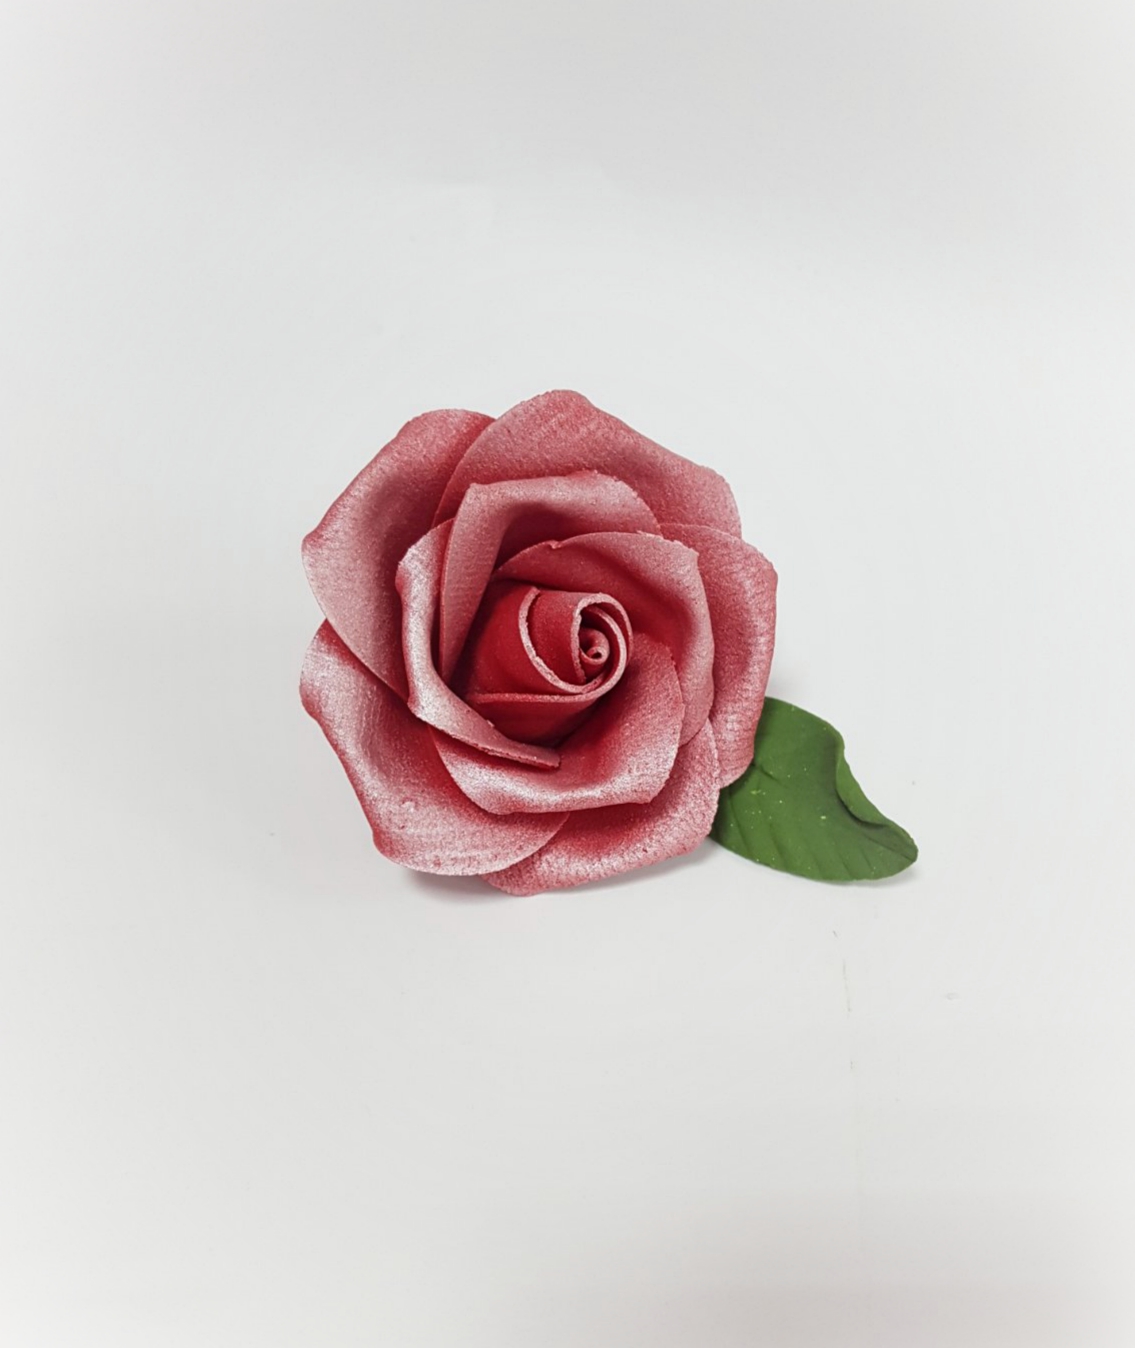 Ruža cvet - Bordo / Slanje na odgovornost kupca!